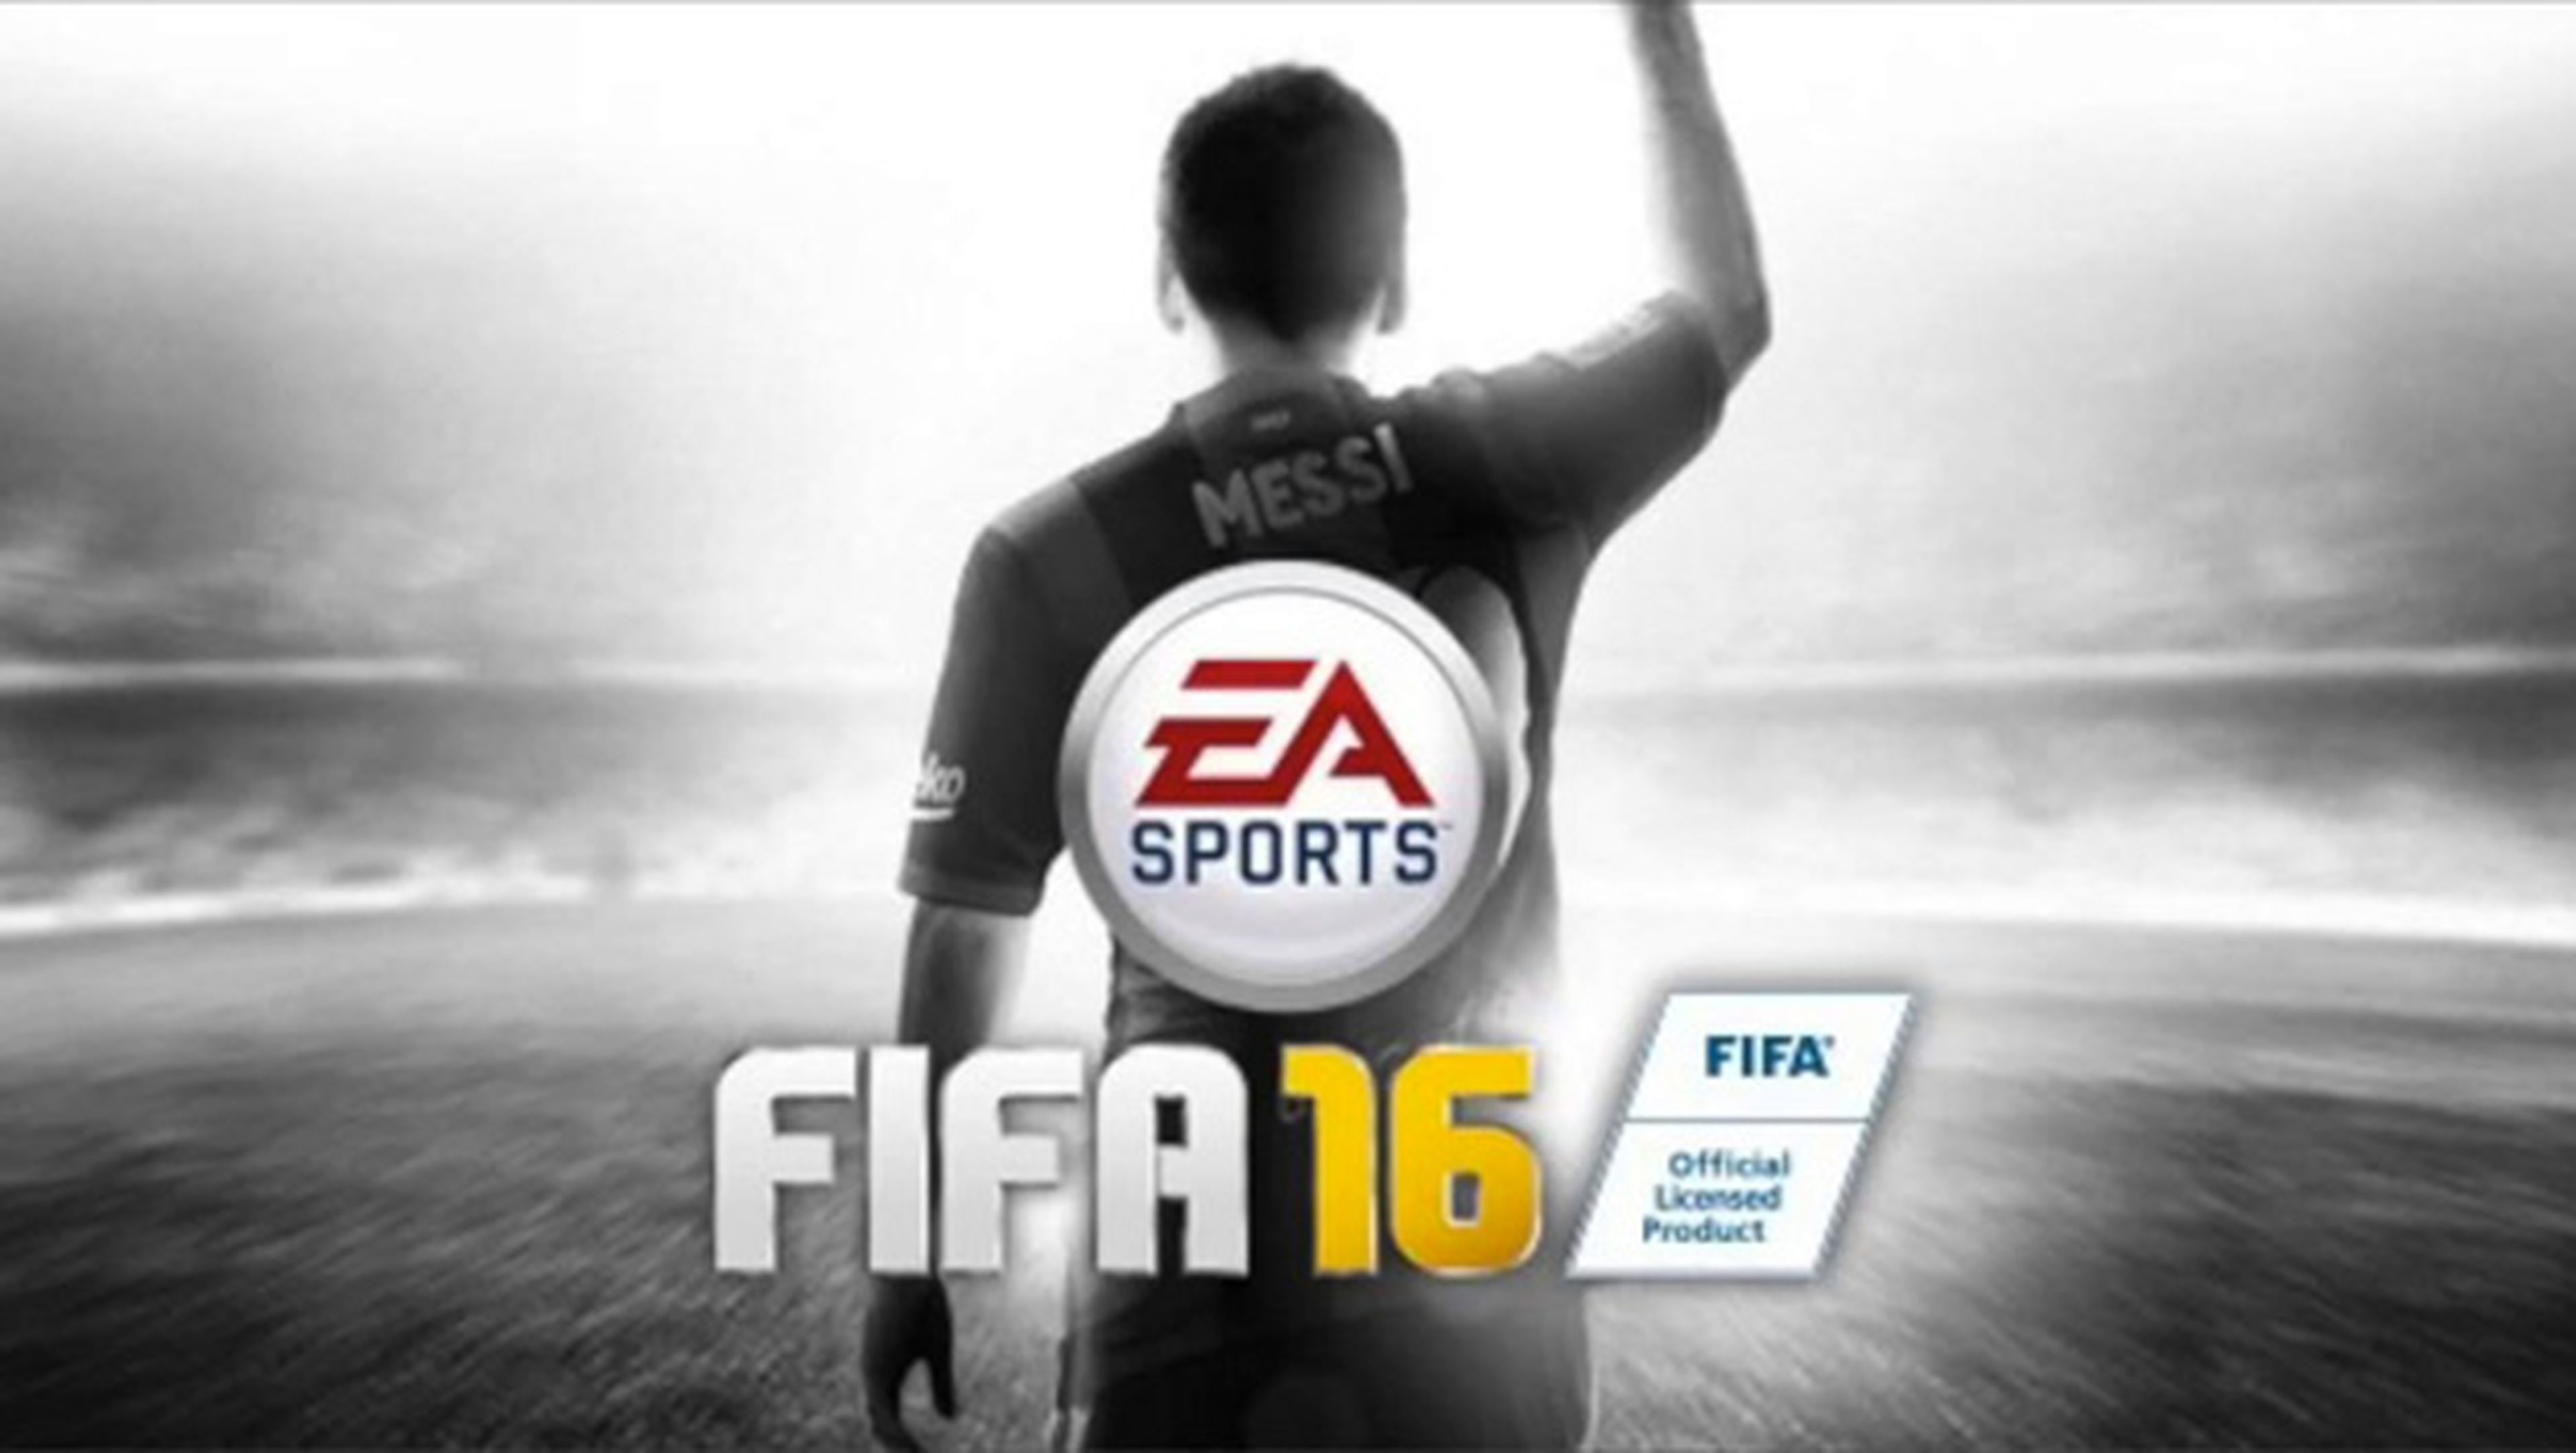 FIFA 16 demo descargar pc xbox ps4 online